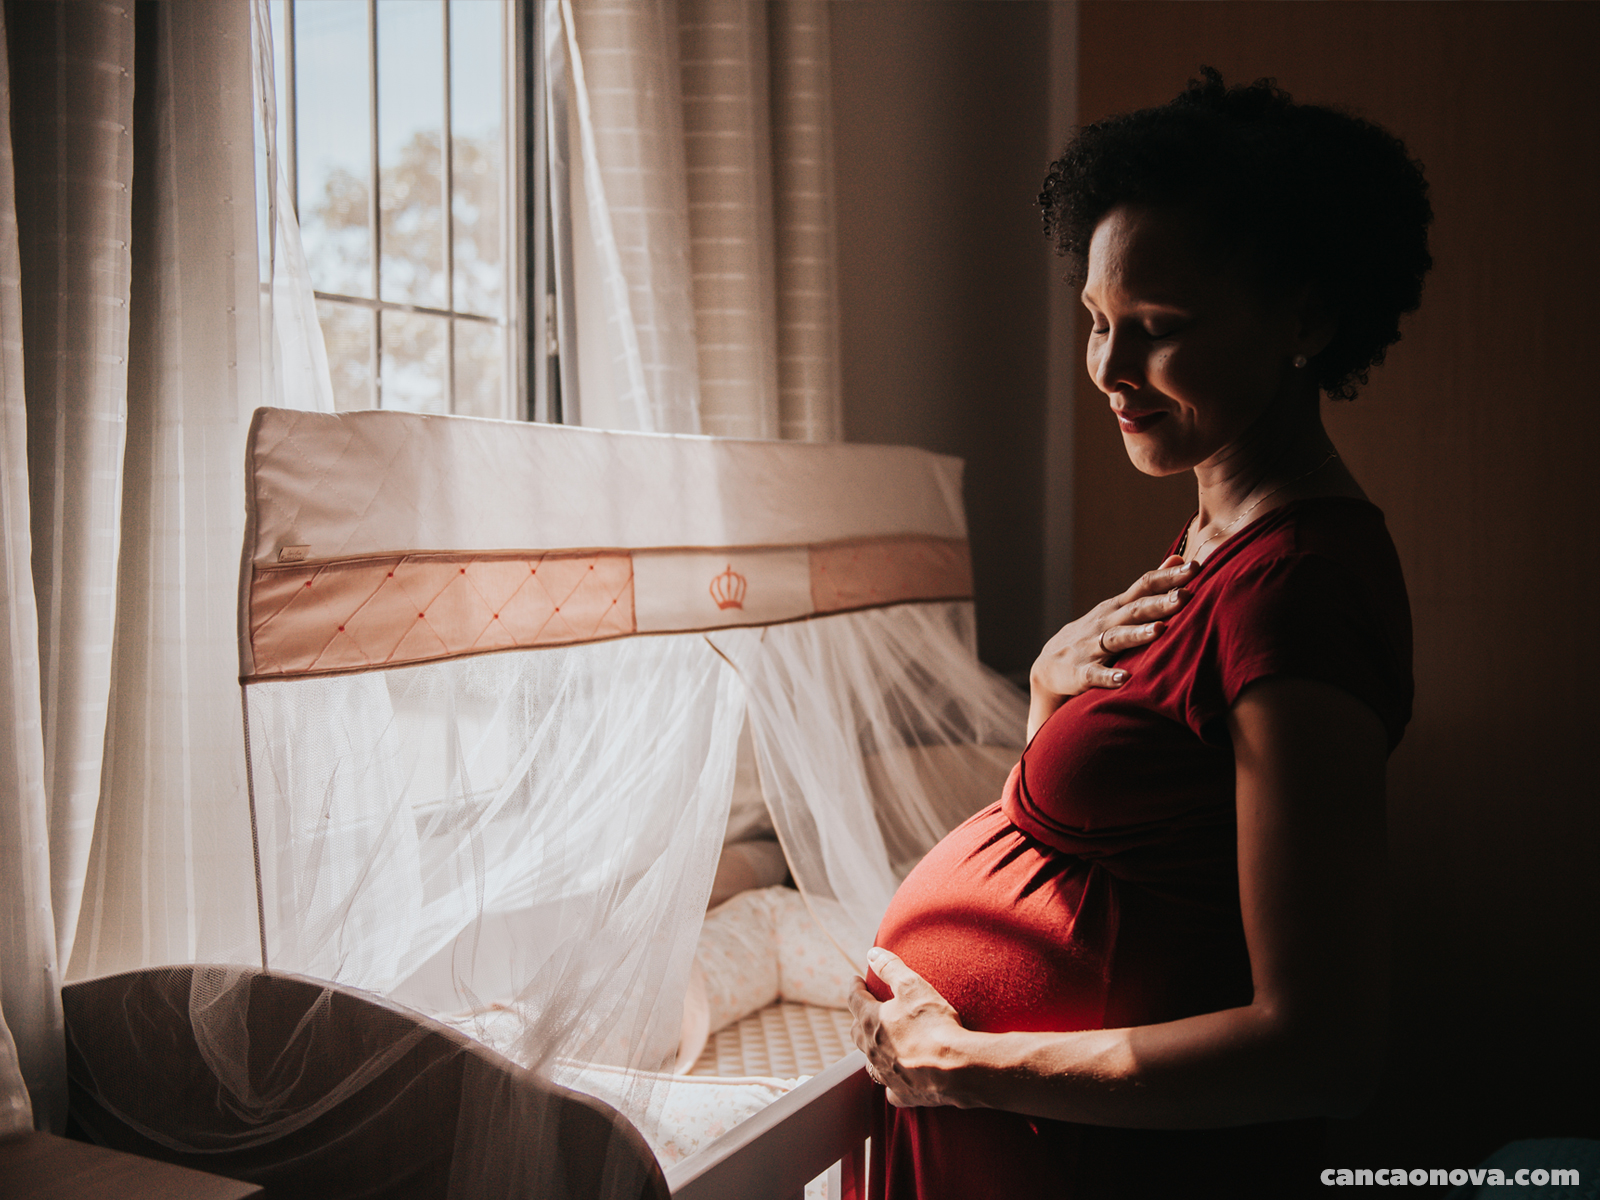 Quais as mudanças essenciais para uma maternidade feliz?